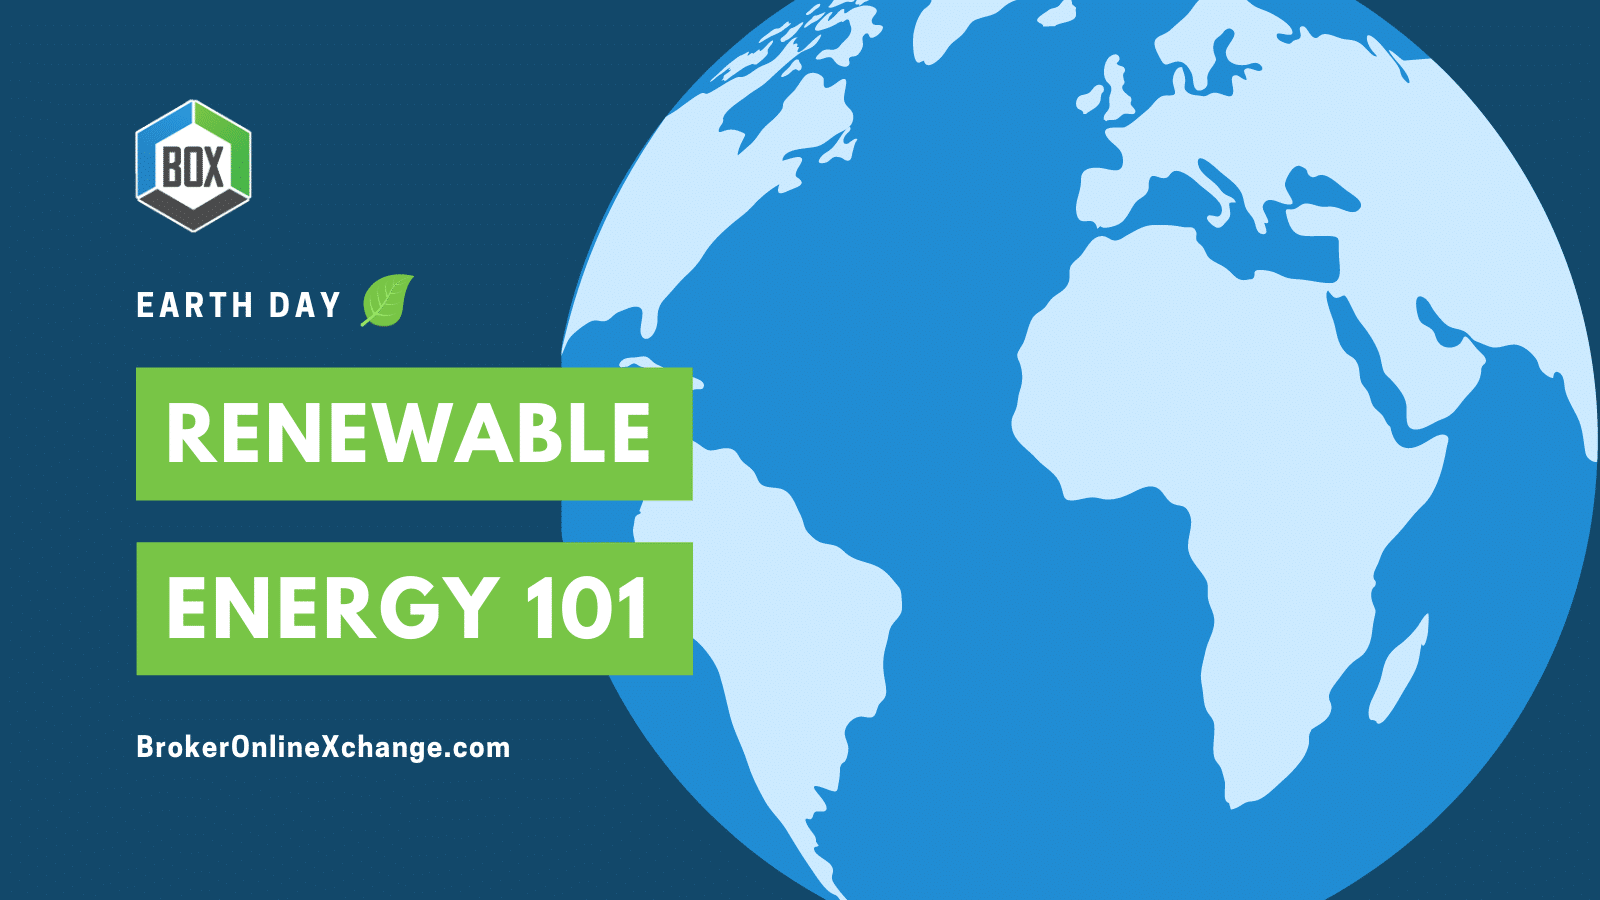 BOX Renewable Energy 101